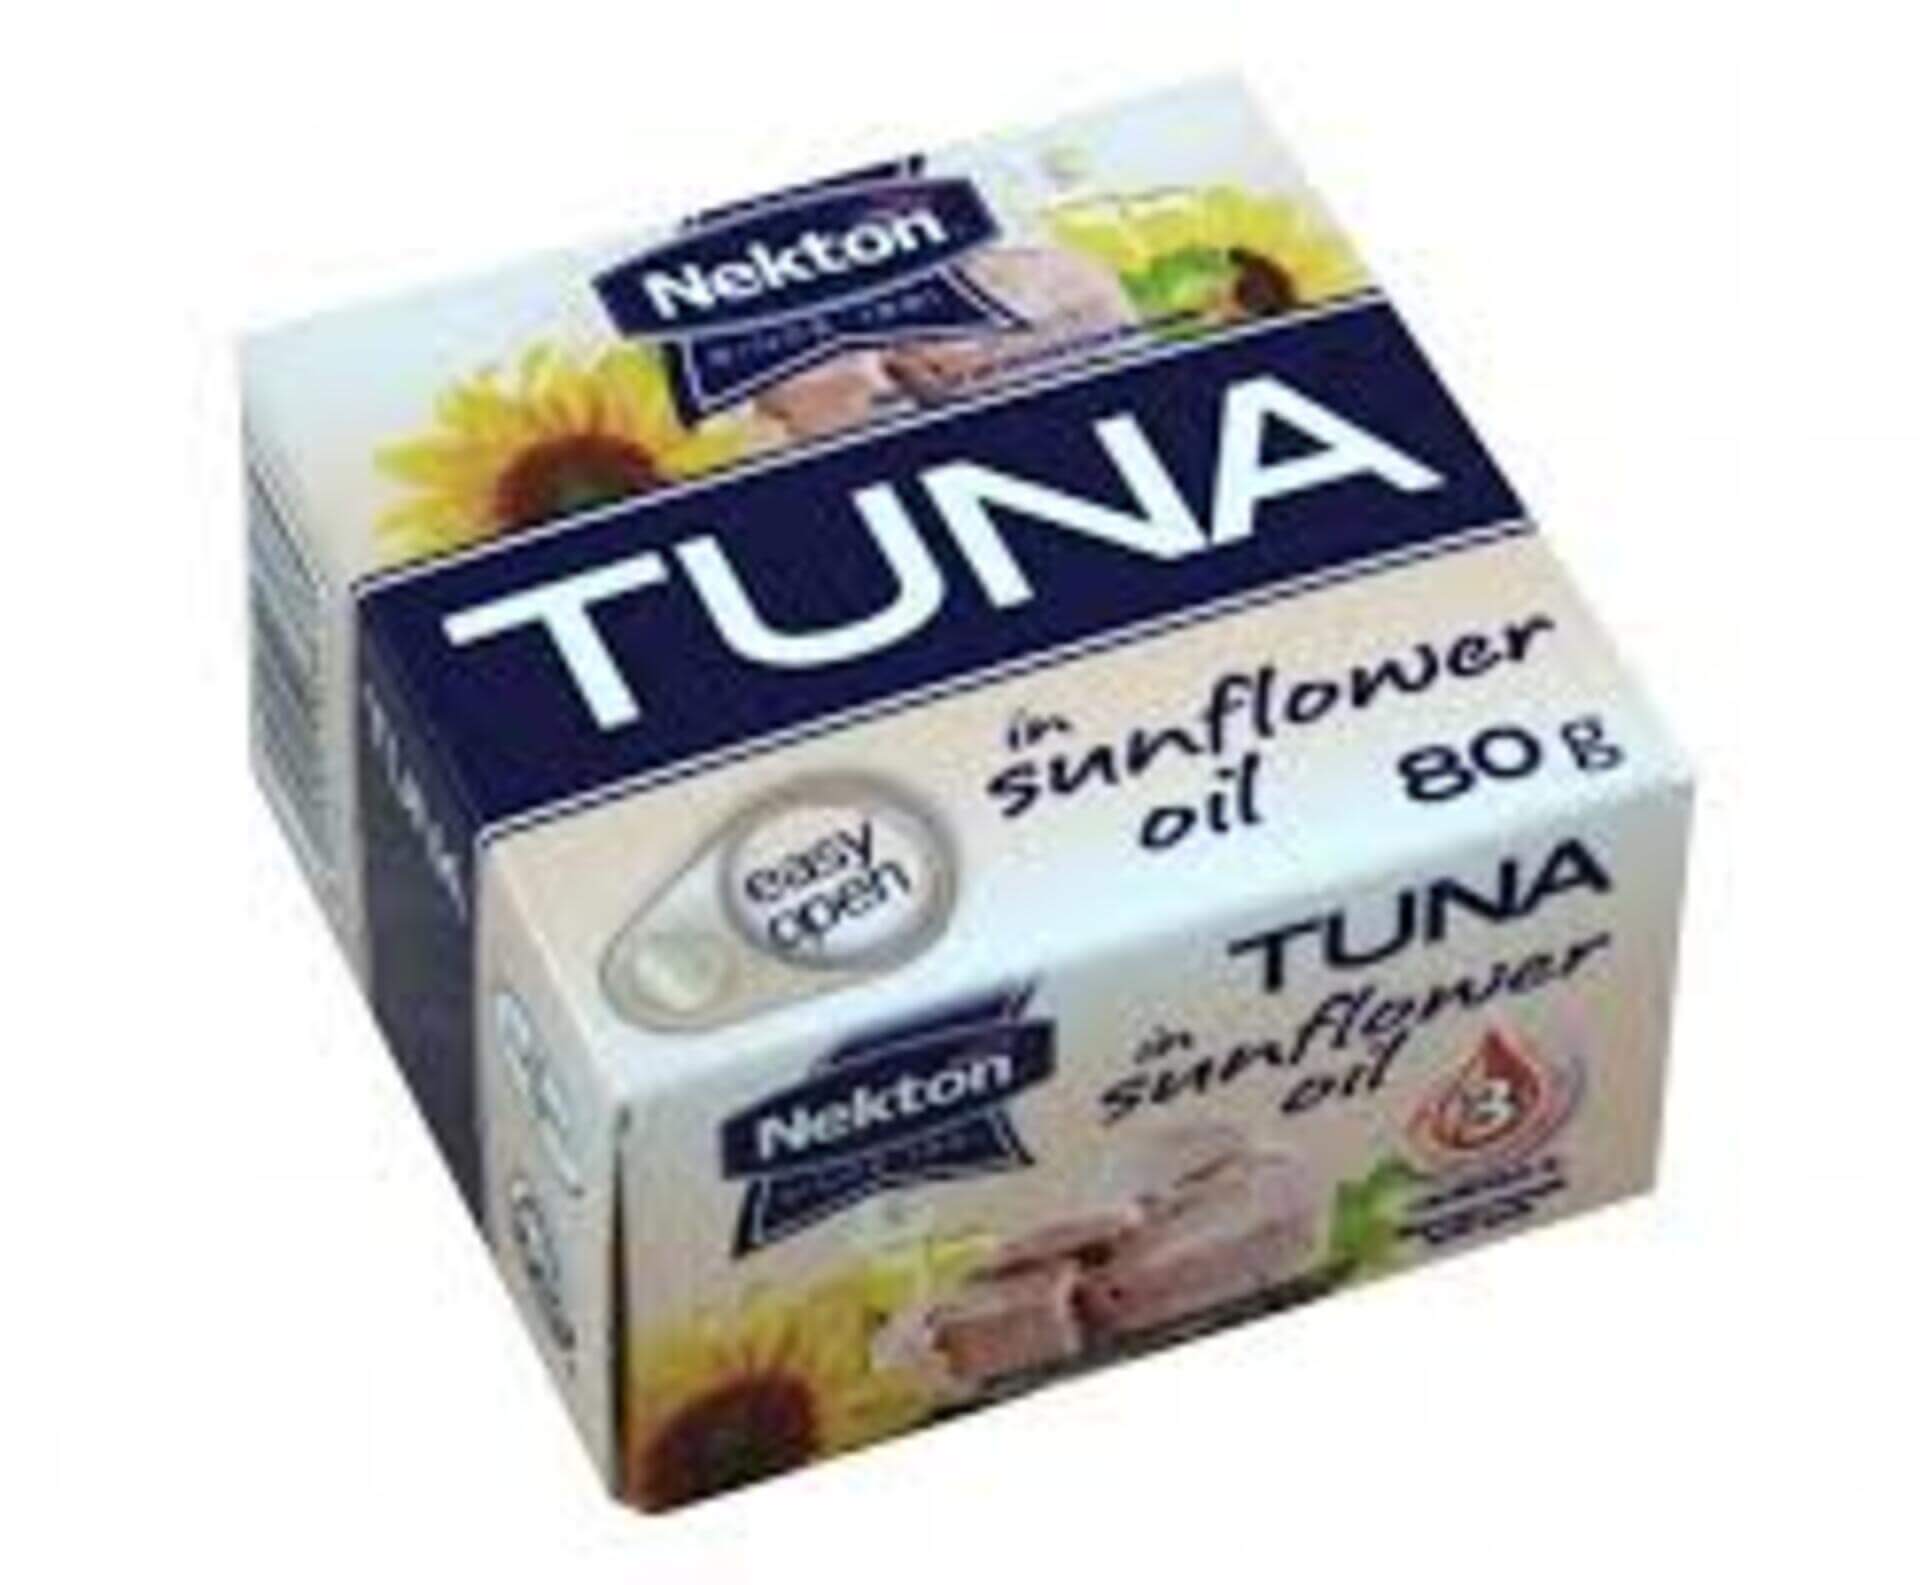 E-shop NEKTON Tuniak v slnečnicovom oleji - celý 80 g